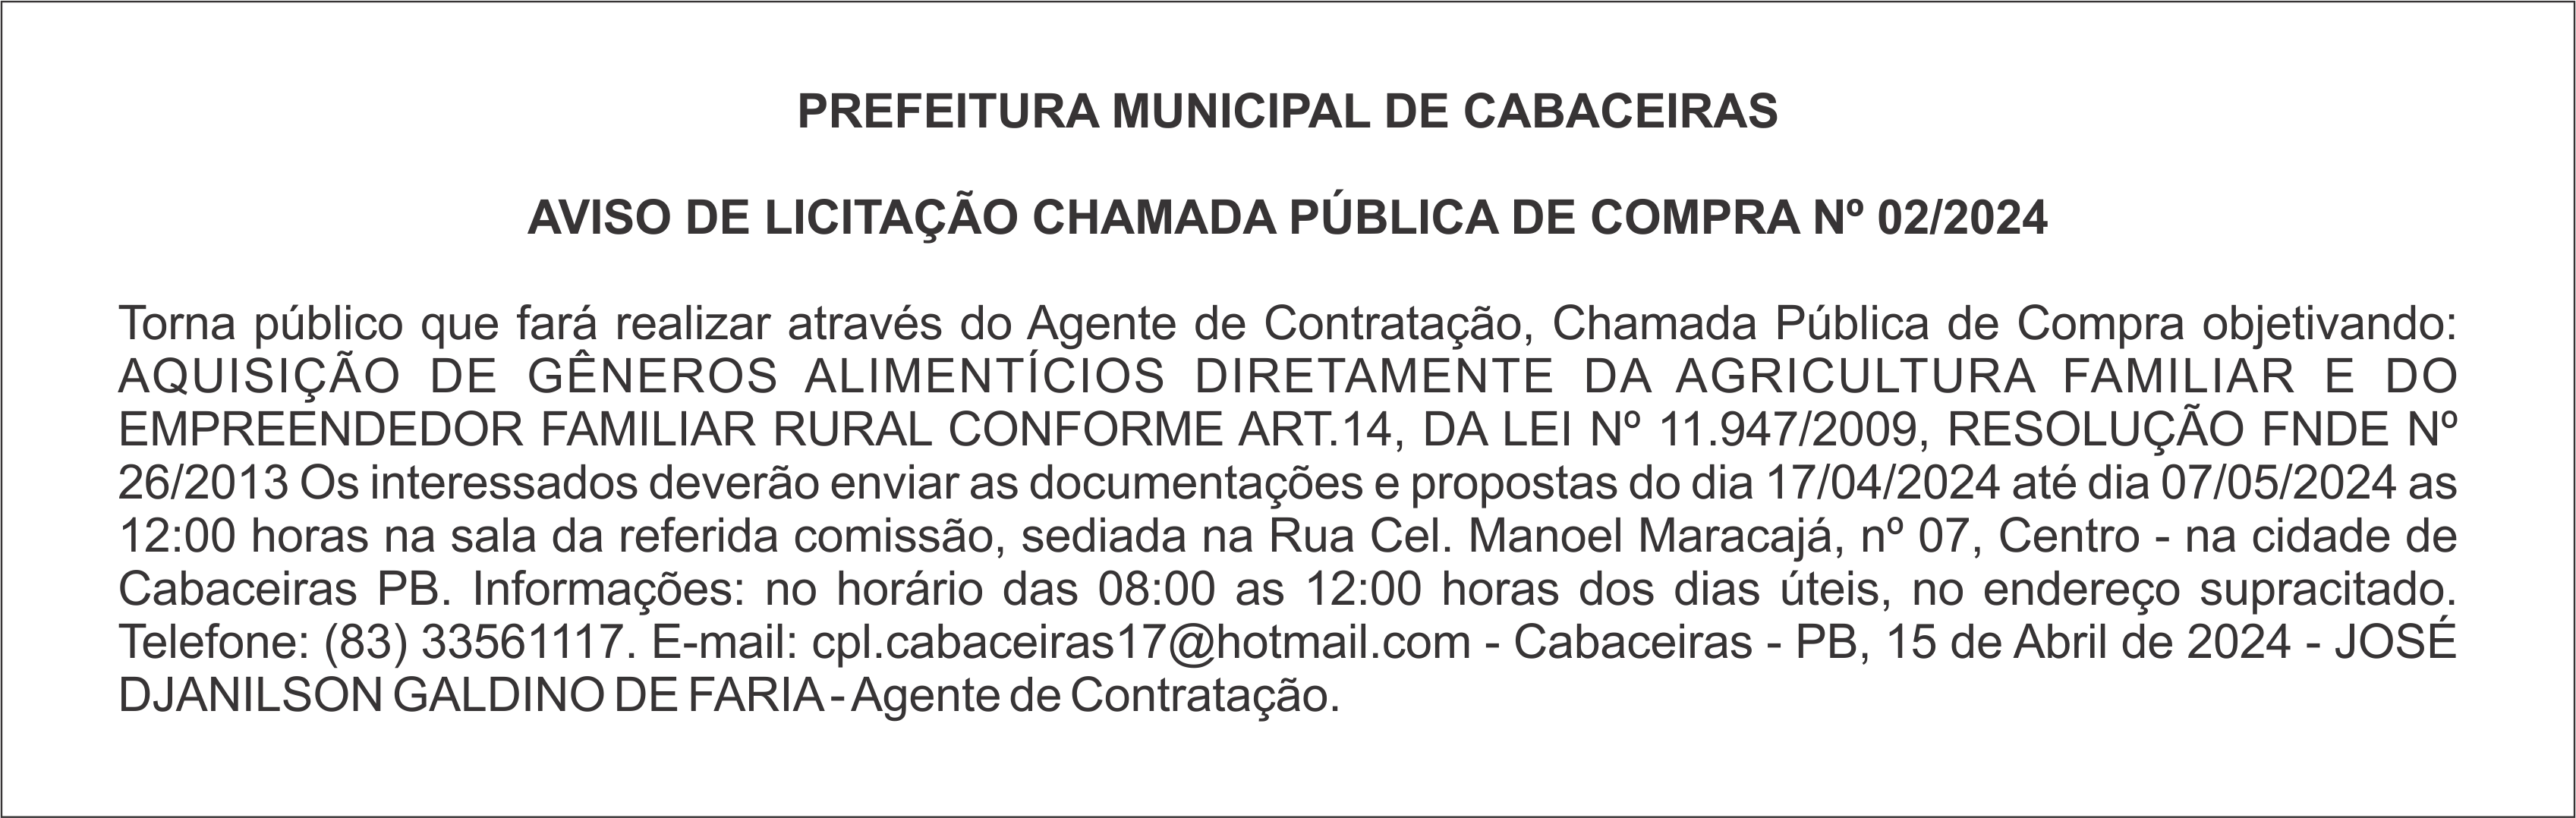 PREFEITURA MUNICIPAL DE CABACEIRAS – AVISO DE LICITAÇÃO – CHAMADA PÚBLICA DE COMPRA Nº 02/2024